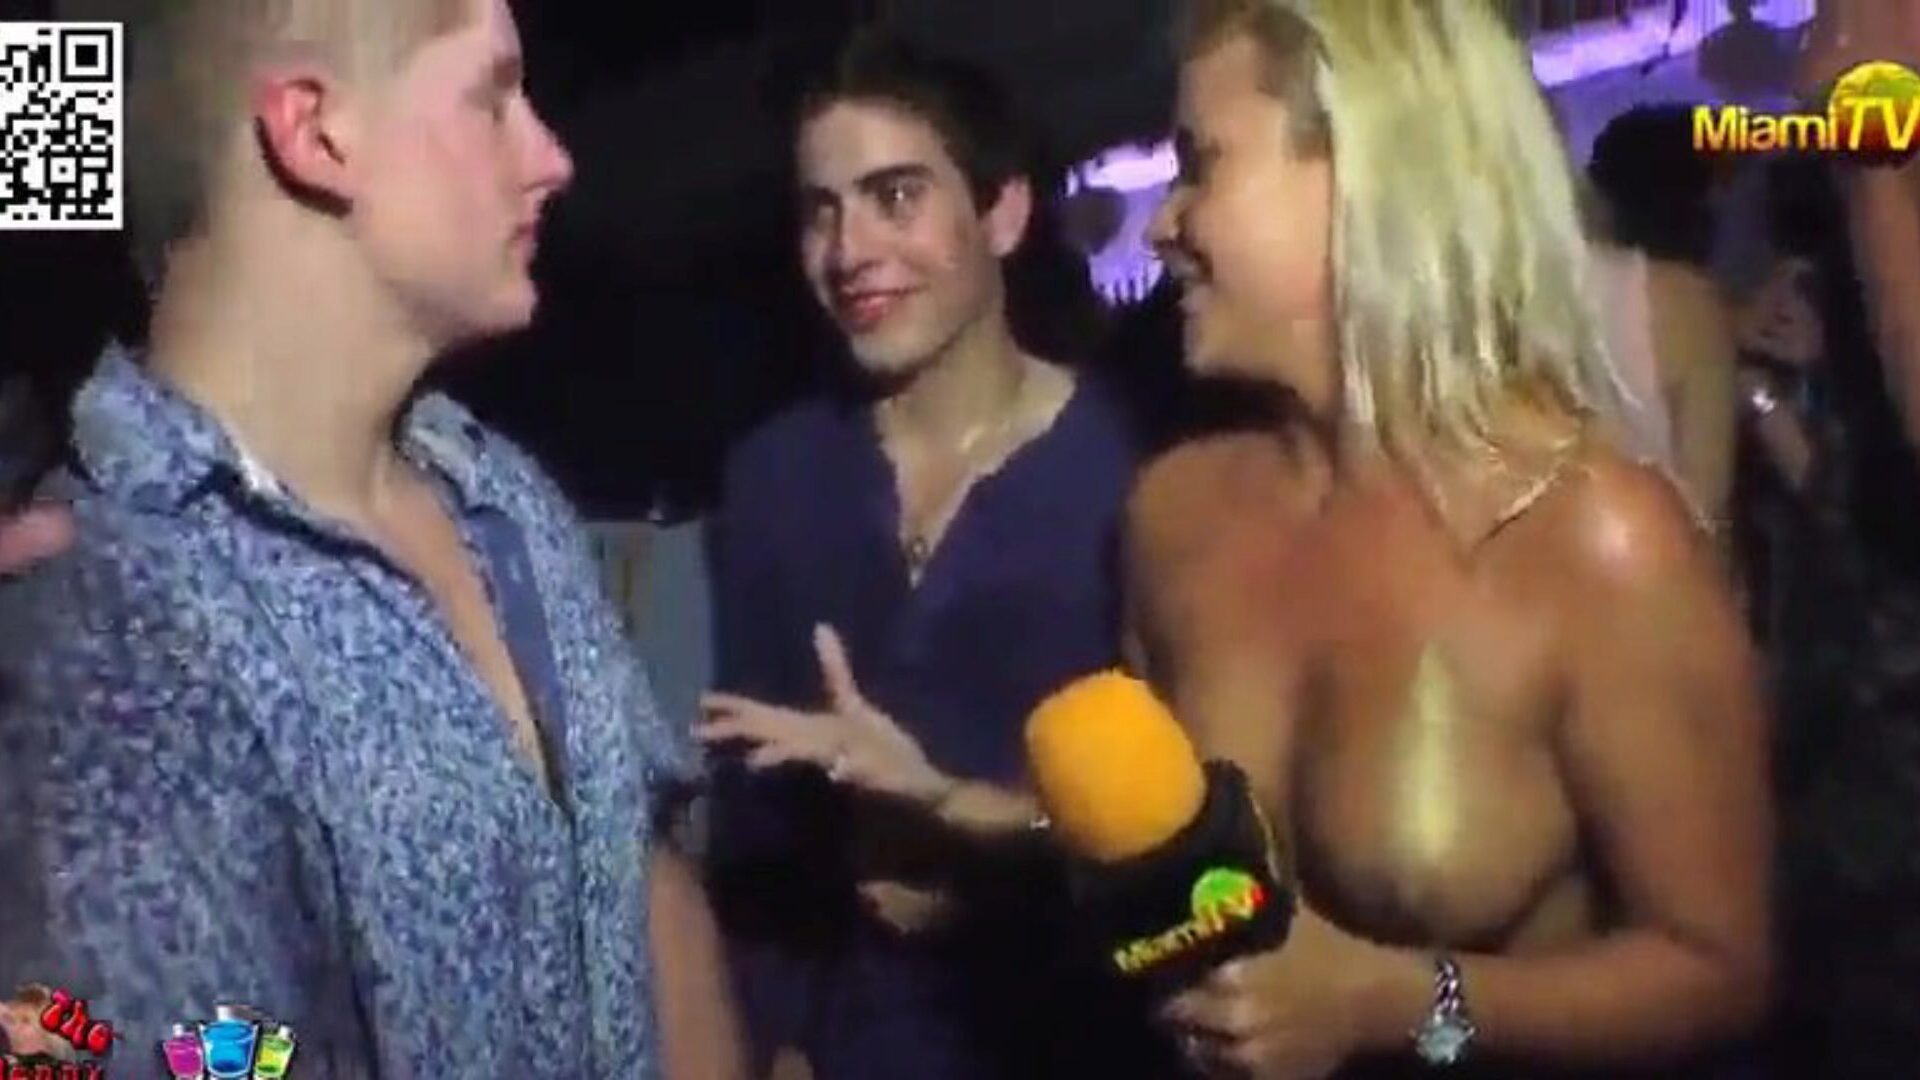 TV-Moderator nimmt Wetten entgegen, um gefummelt zu werden 3 knapp gekleidete Gastgeber bitten die Leute in einem Nachtclub, sie zu spüren und zu knutschen